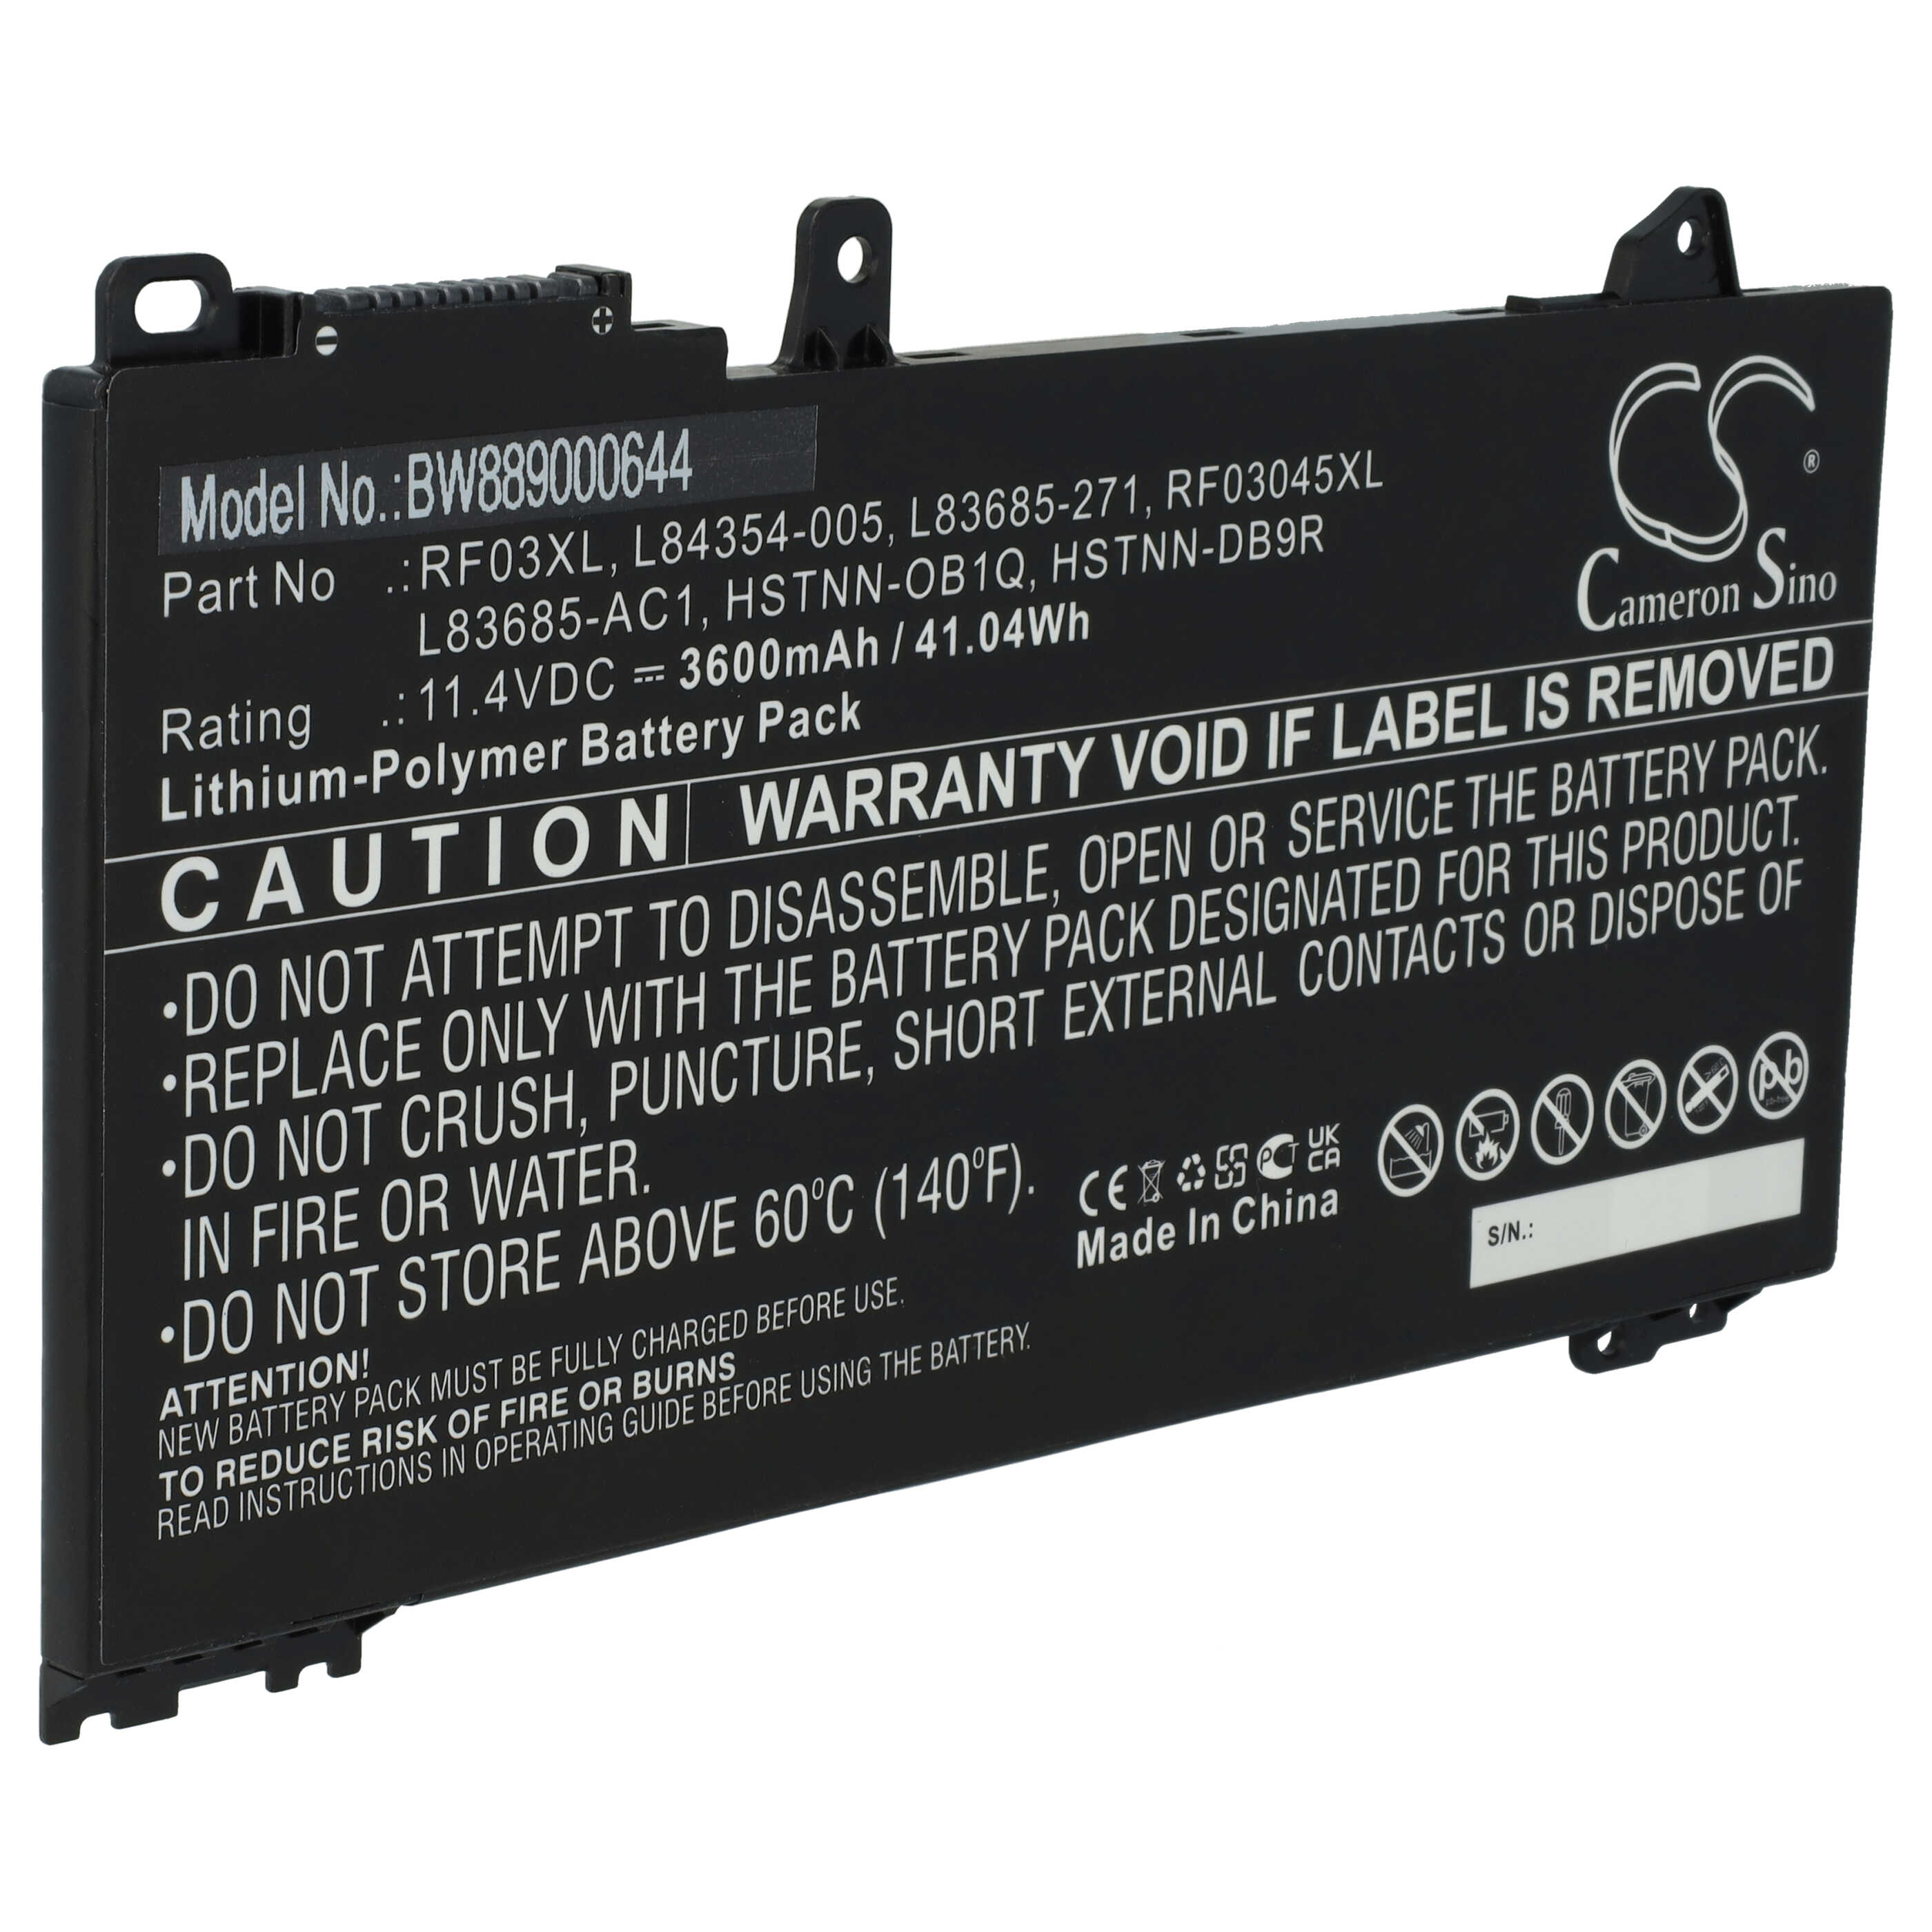 Notebook Battery Replacement for HP HSTNN-DB9R, HSTNN-OB1Q, L83685-271, L83685-AC1 - 3600mAh 11.4V Li-polymer